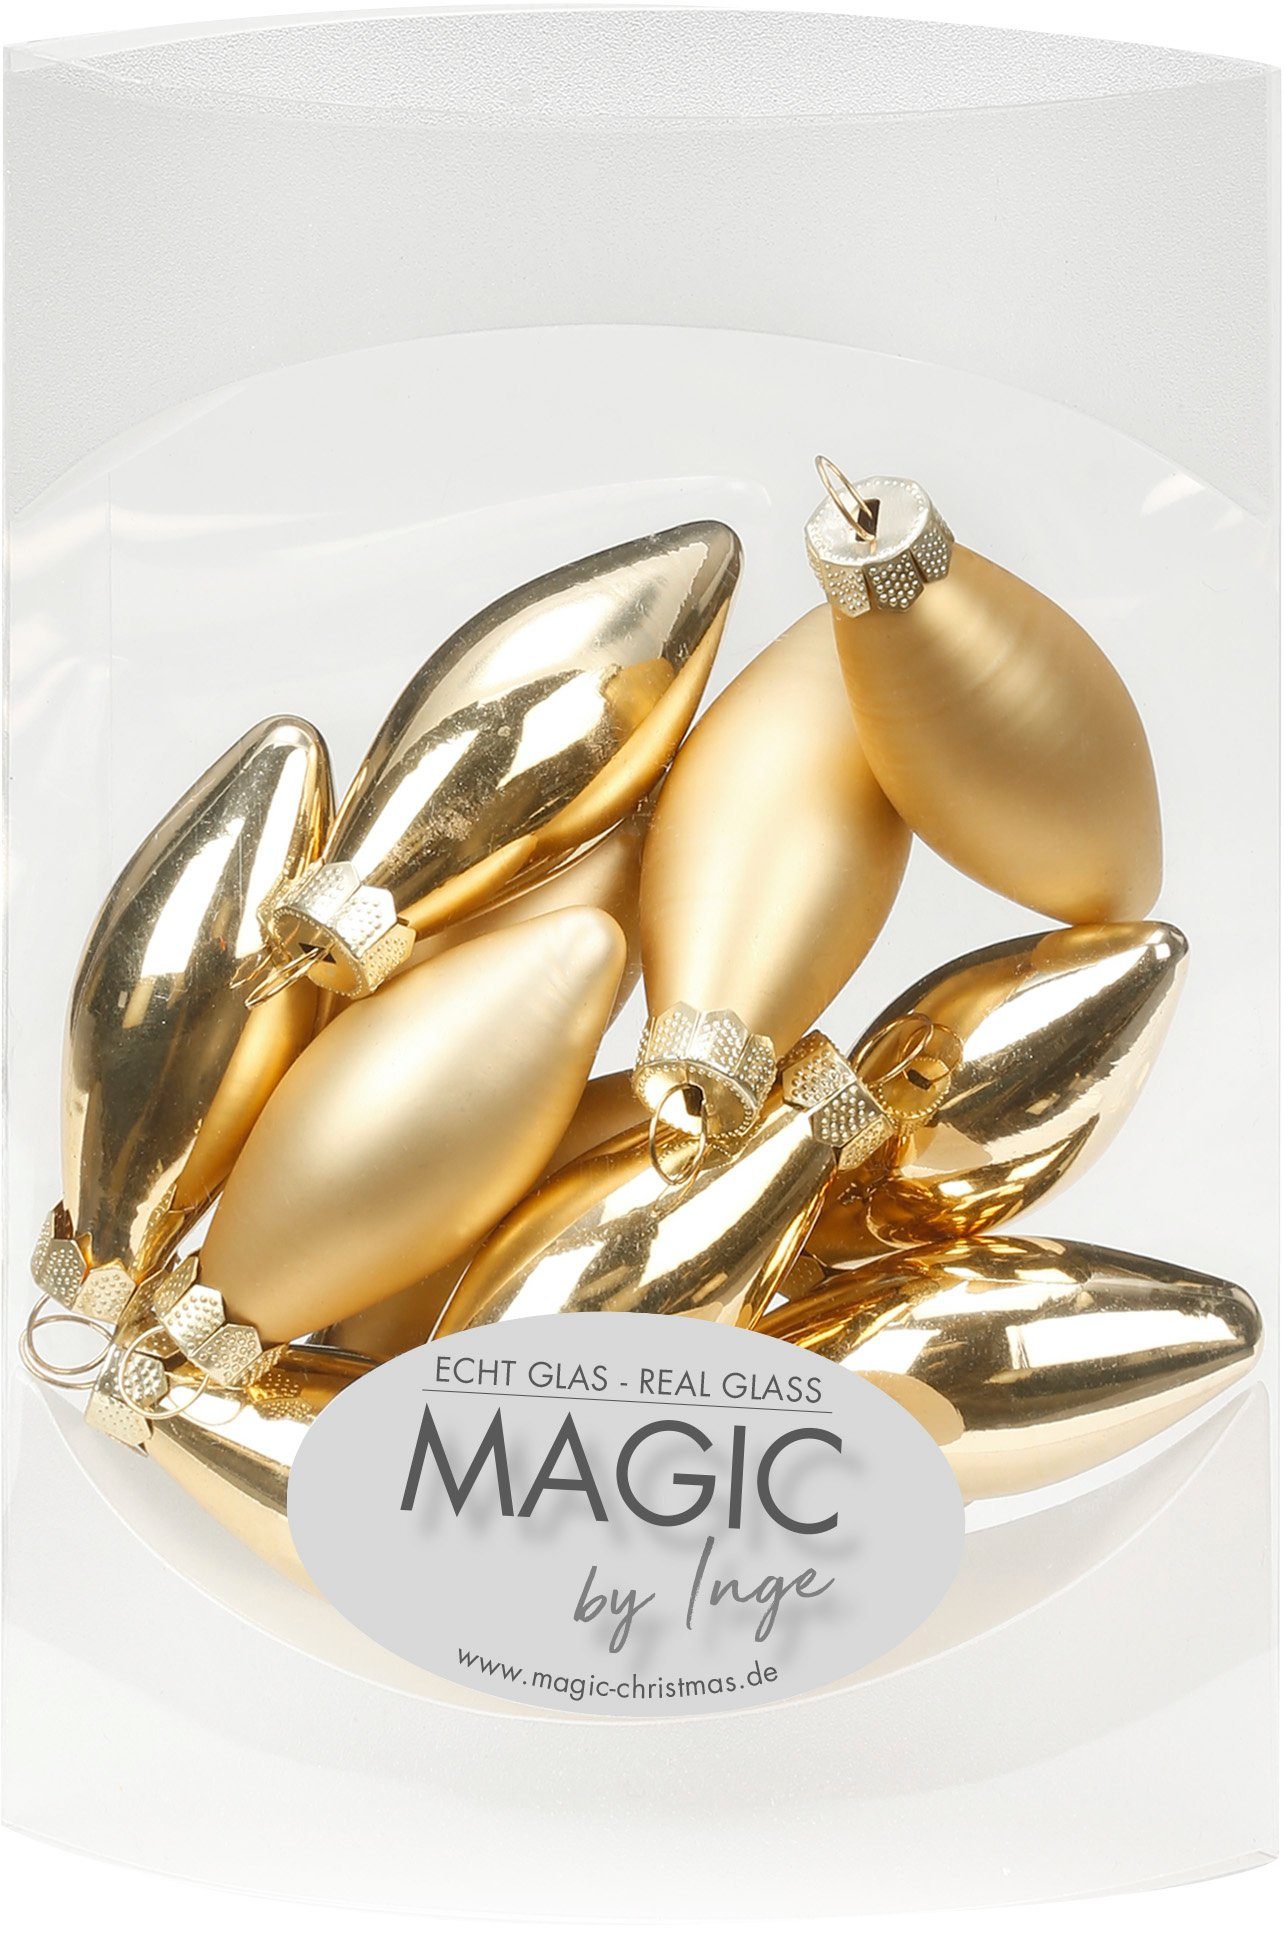 MAGIC by Inge Christbaumschmuck, Christbaumschmuck Mini Glas Oliven 4.5cm Brokatgold, 12 Stück